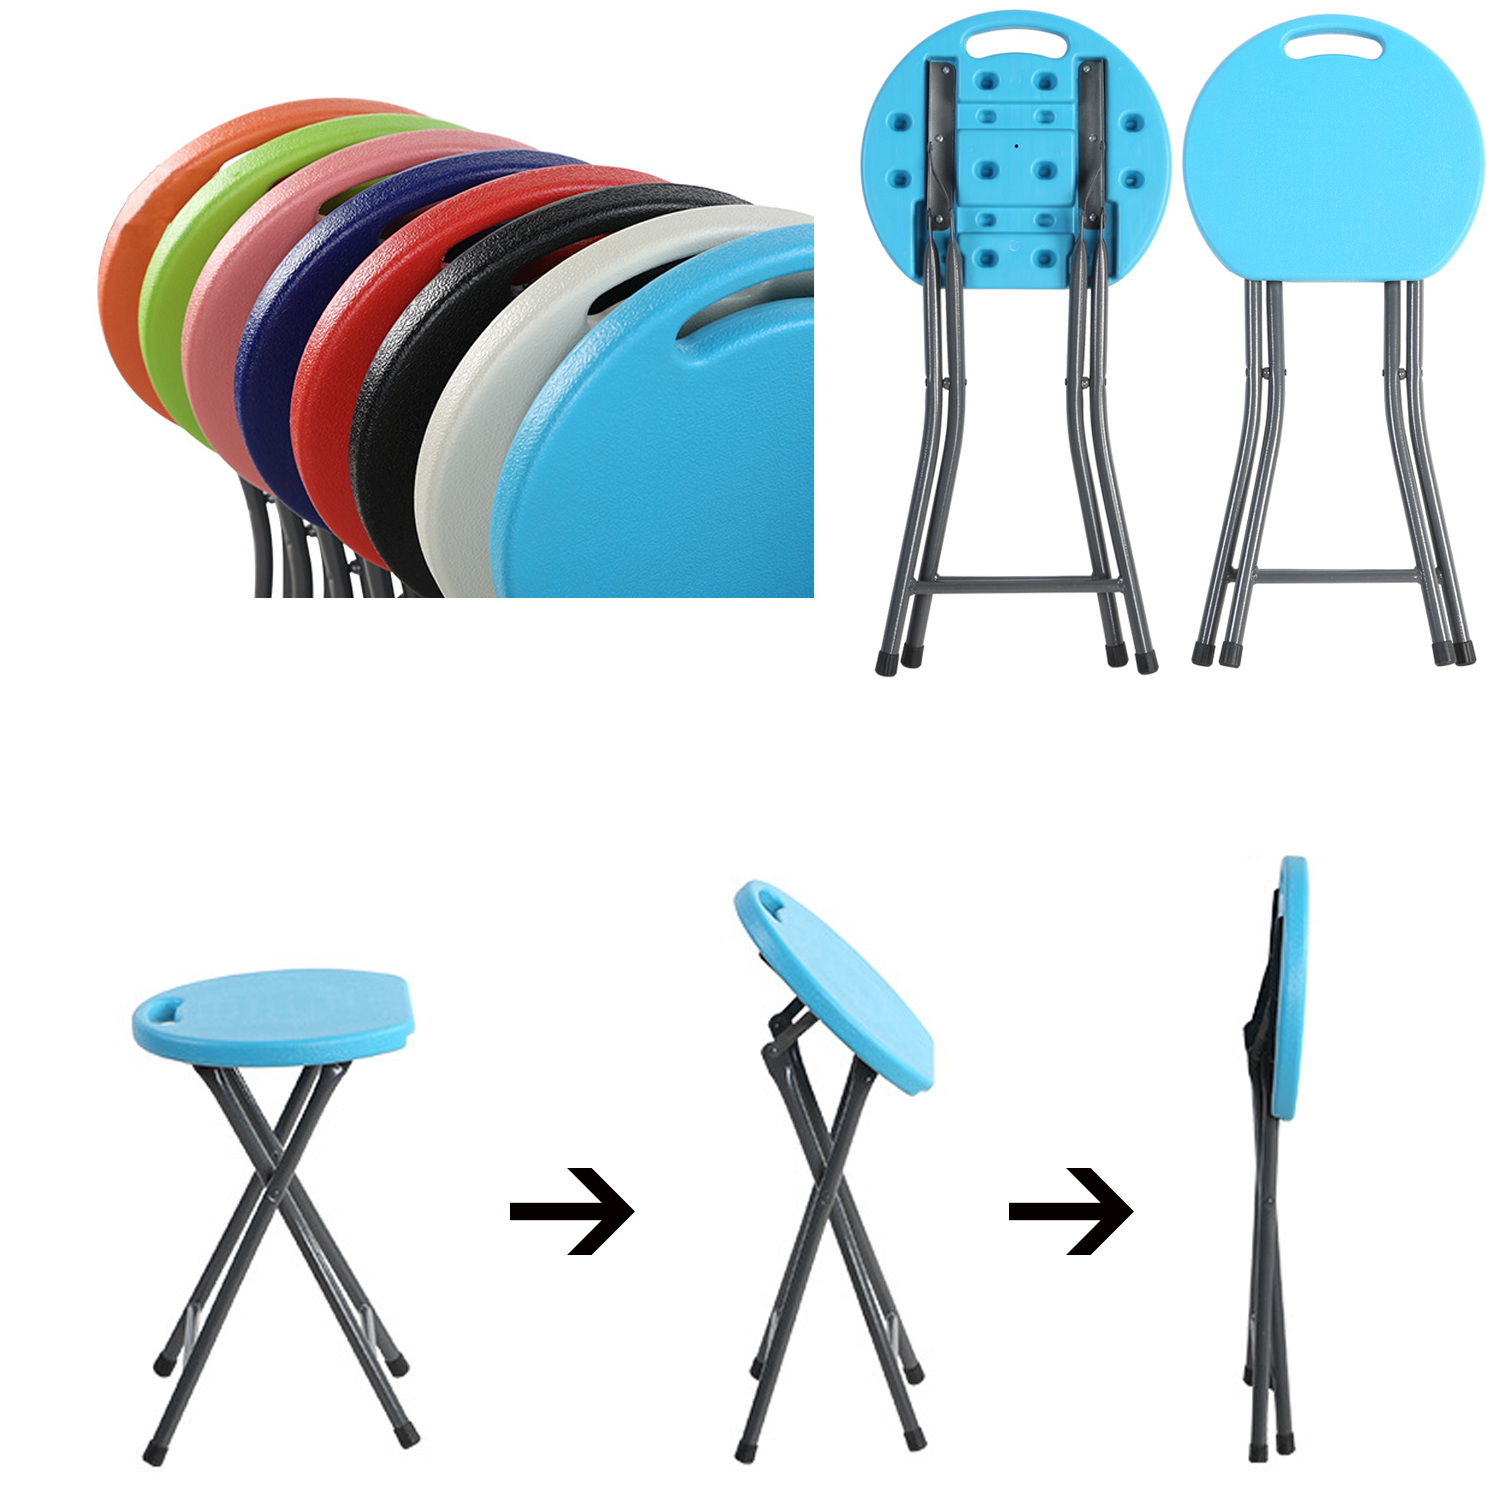 Taburete de plástico grueso para adultos, silla plegable sencilla, taburete plegable para el hogar, taburete redondo pequeño portátil sencillo para exteriores